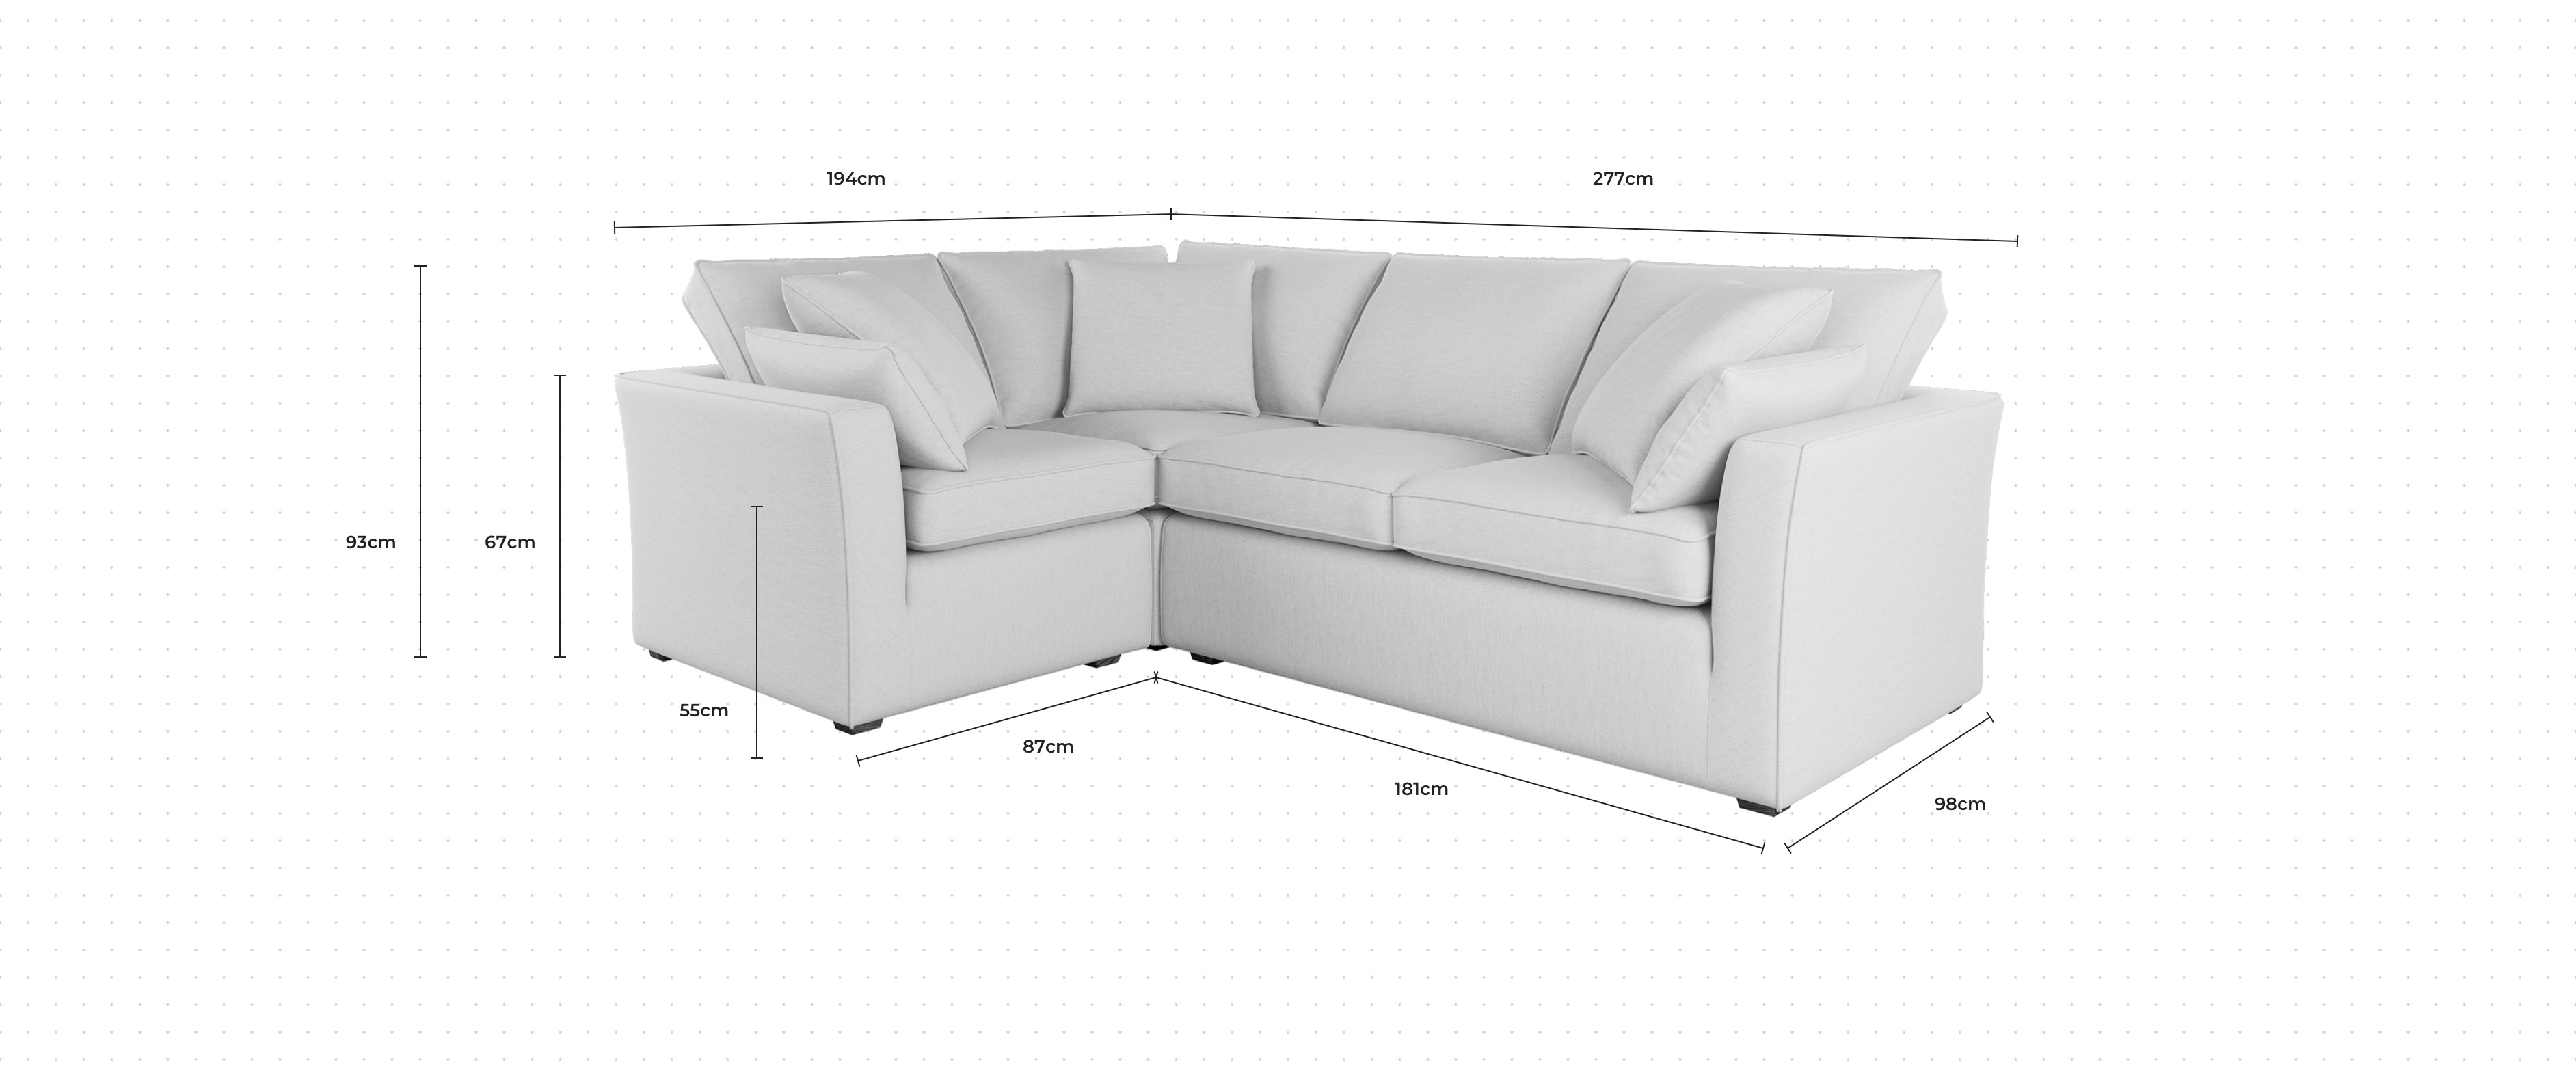 Caruso Corner Sofa LHF dimensions